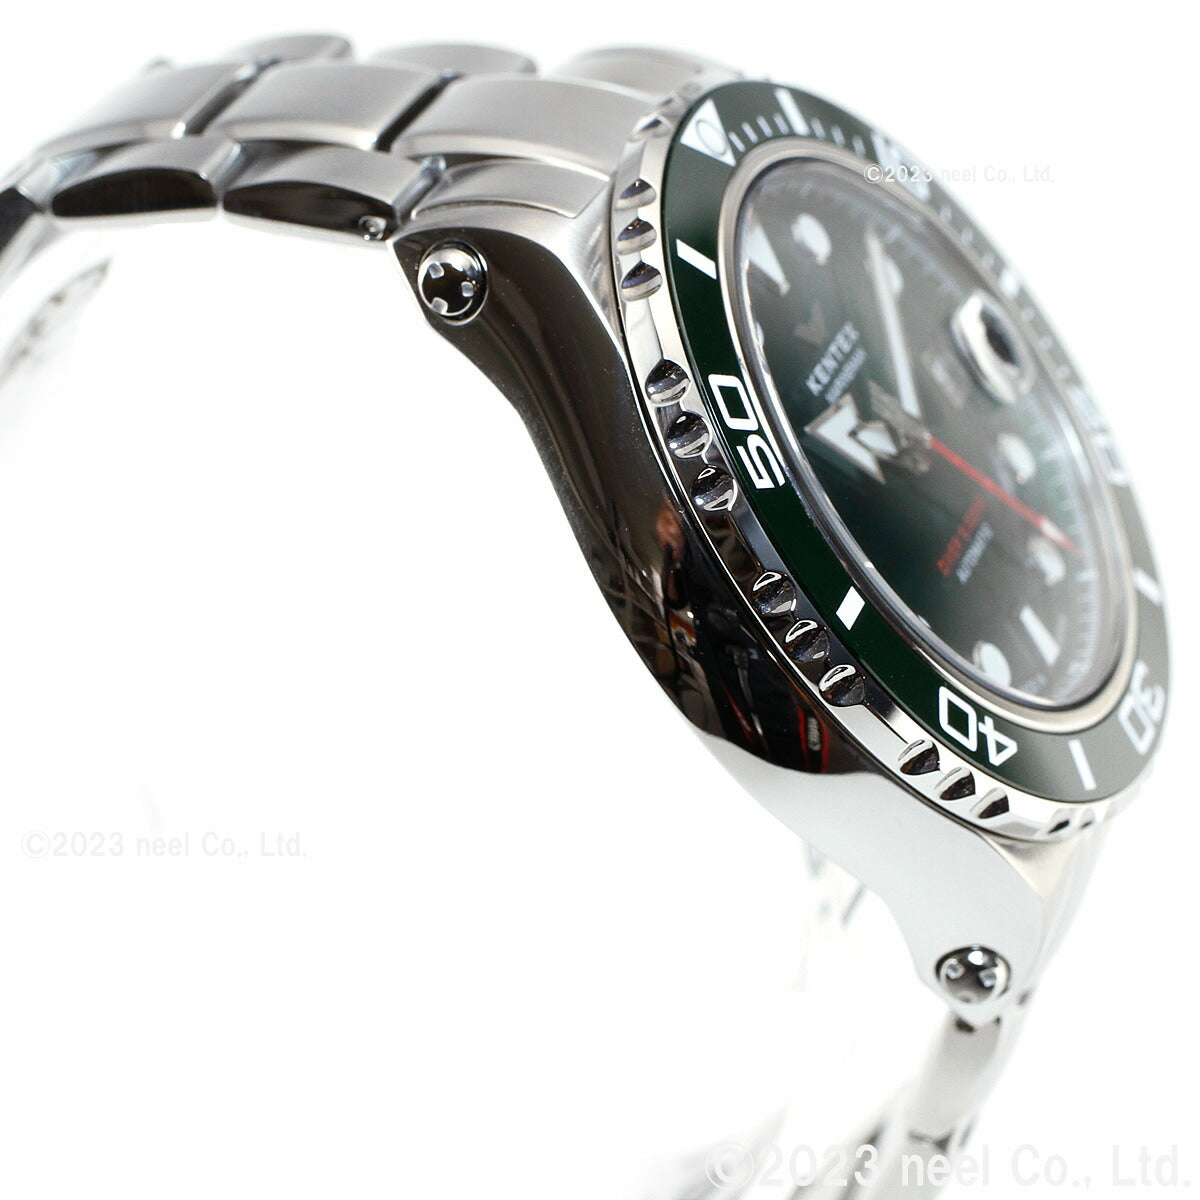 ケンテックス KENTEX 限定モデル 腕時計 時計 メンズ ダイバーズ 自動巻き マリンマン シーホースII 日本製 S706M-17